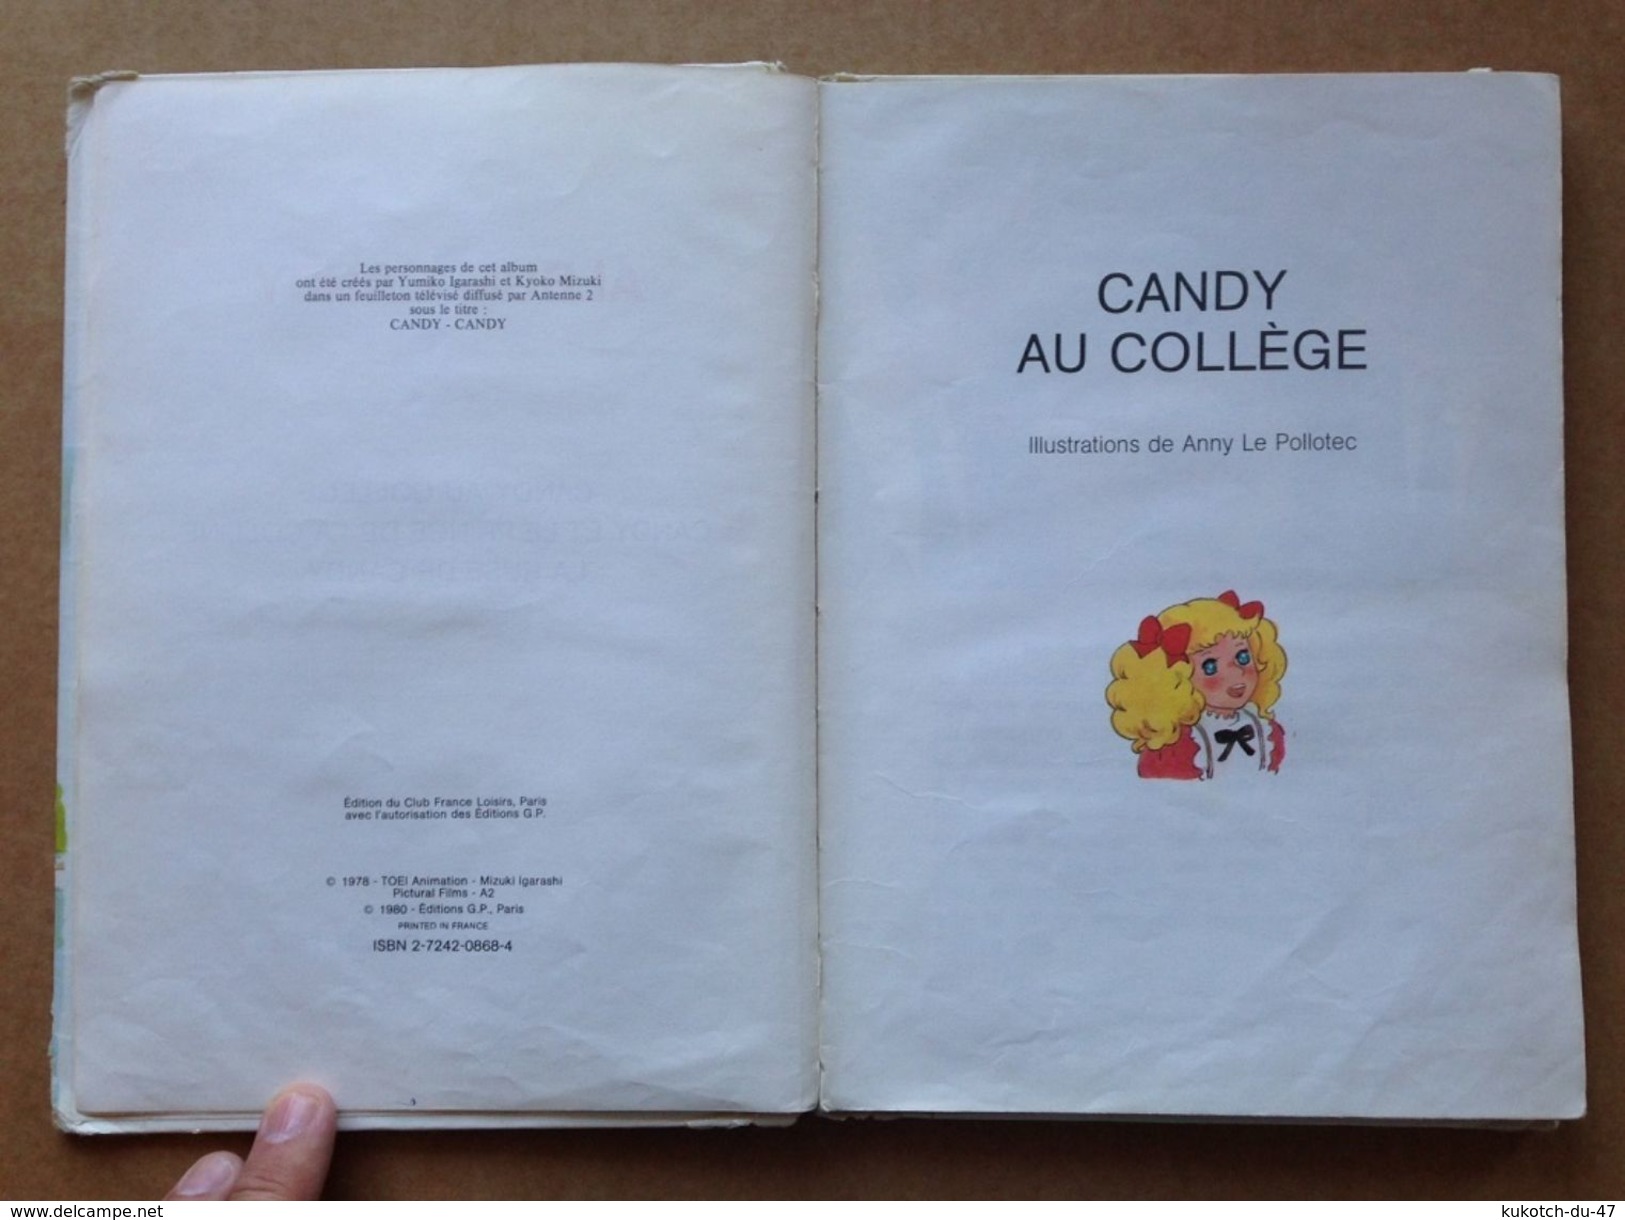 Album Jeunesse - Candy (1981) - Bibliothèque Rouge Et Or